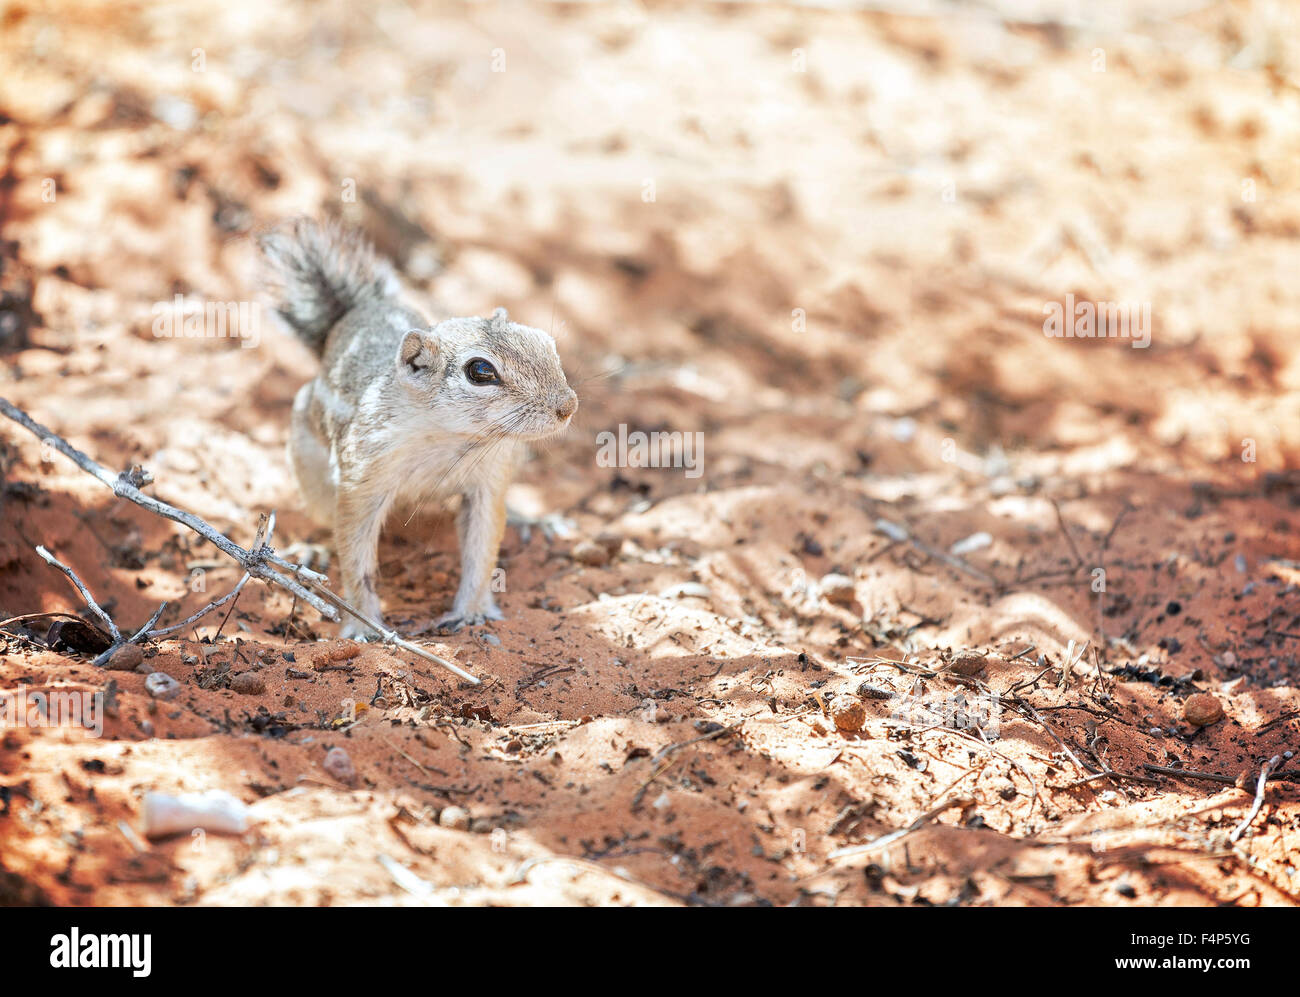 Écureuil dans un habitat naturel, la Vallée de Feu State Park, Nevada, USA. Banque D'Images